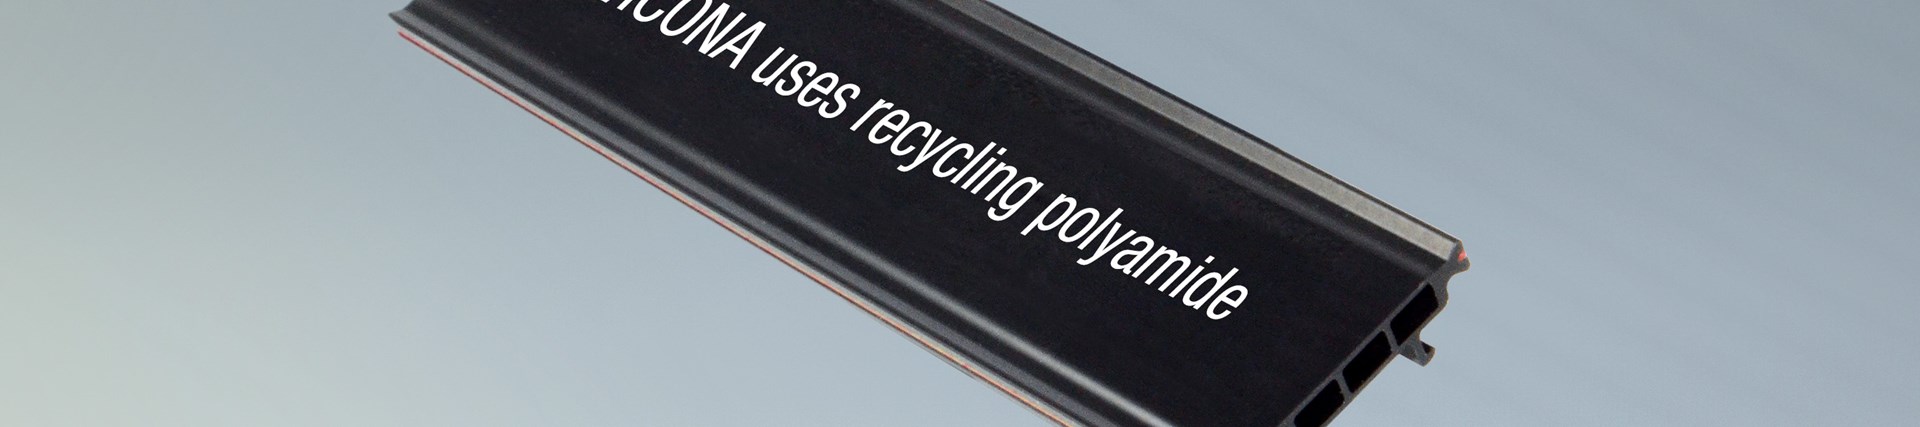 Poliammide riciclata